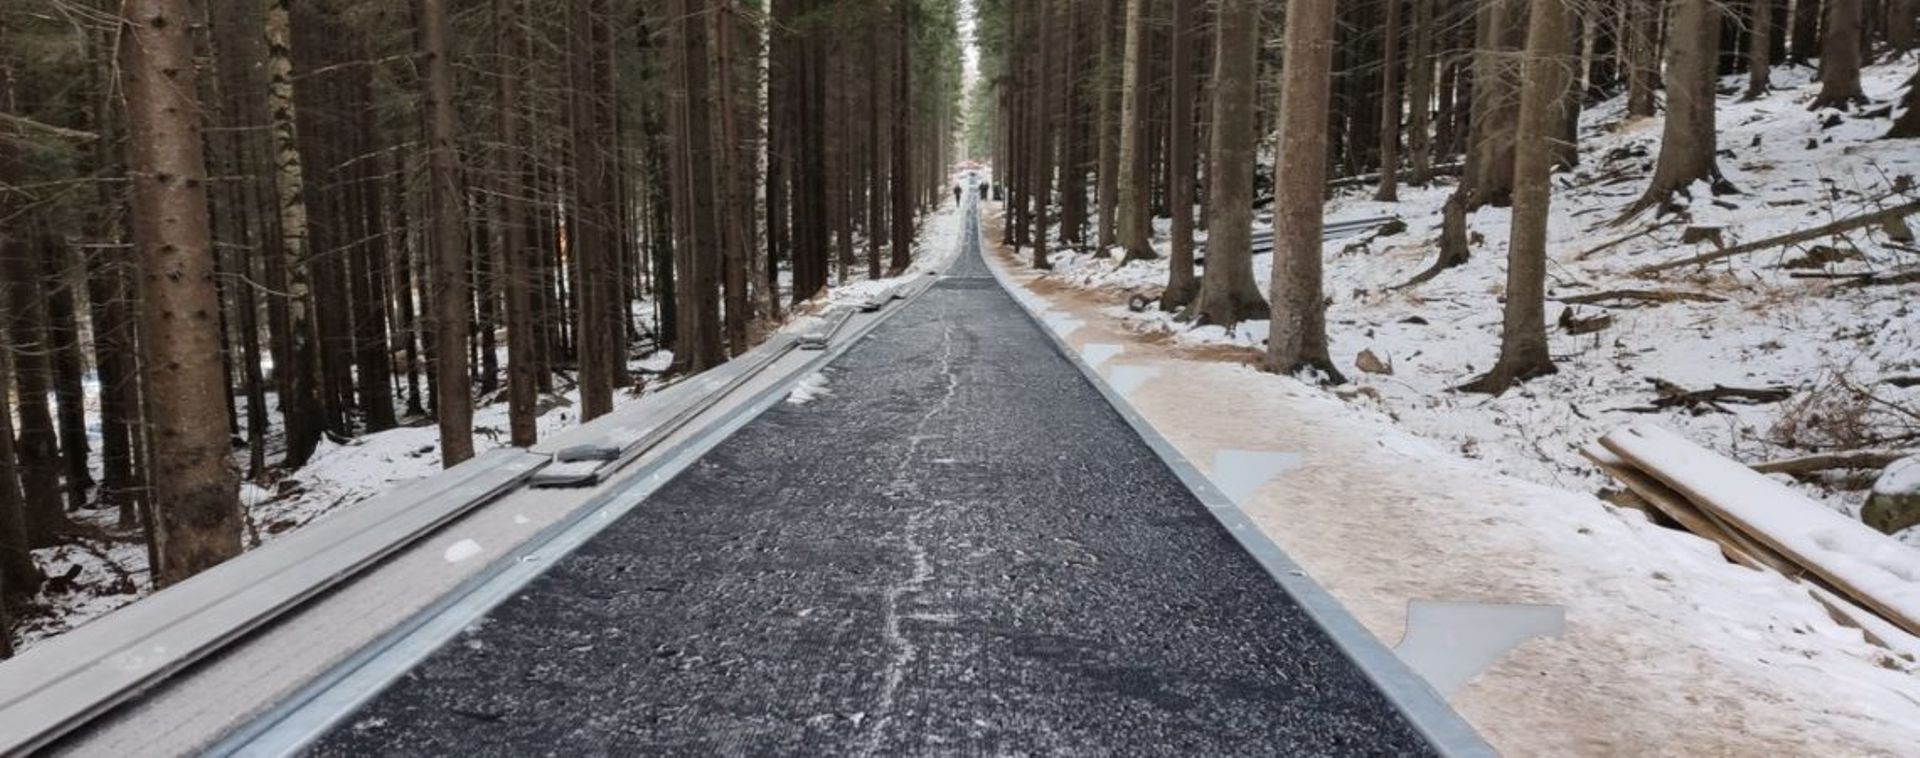 W Karpaczu w sezonie zimowym uruchomiona zostanie najdłuższa taśma narciarska w Polsce 